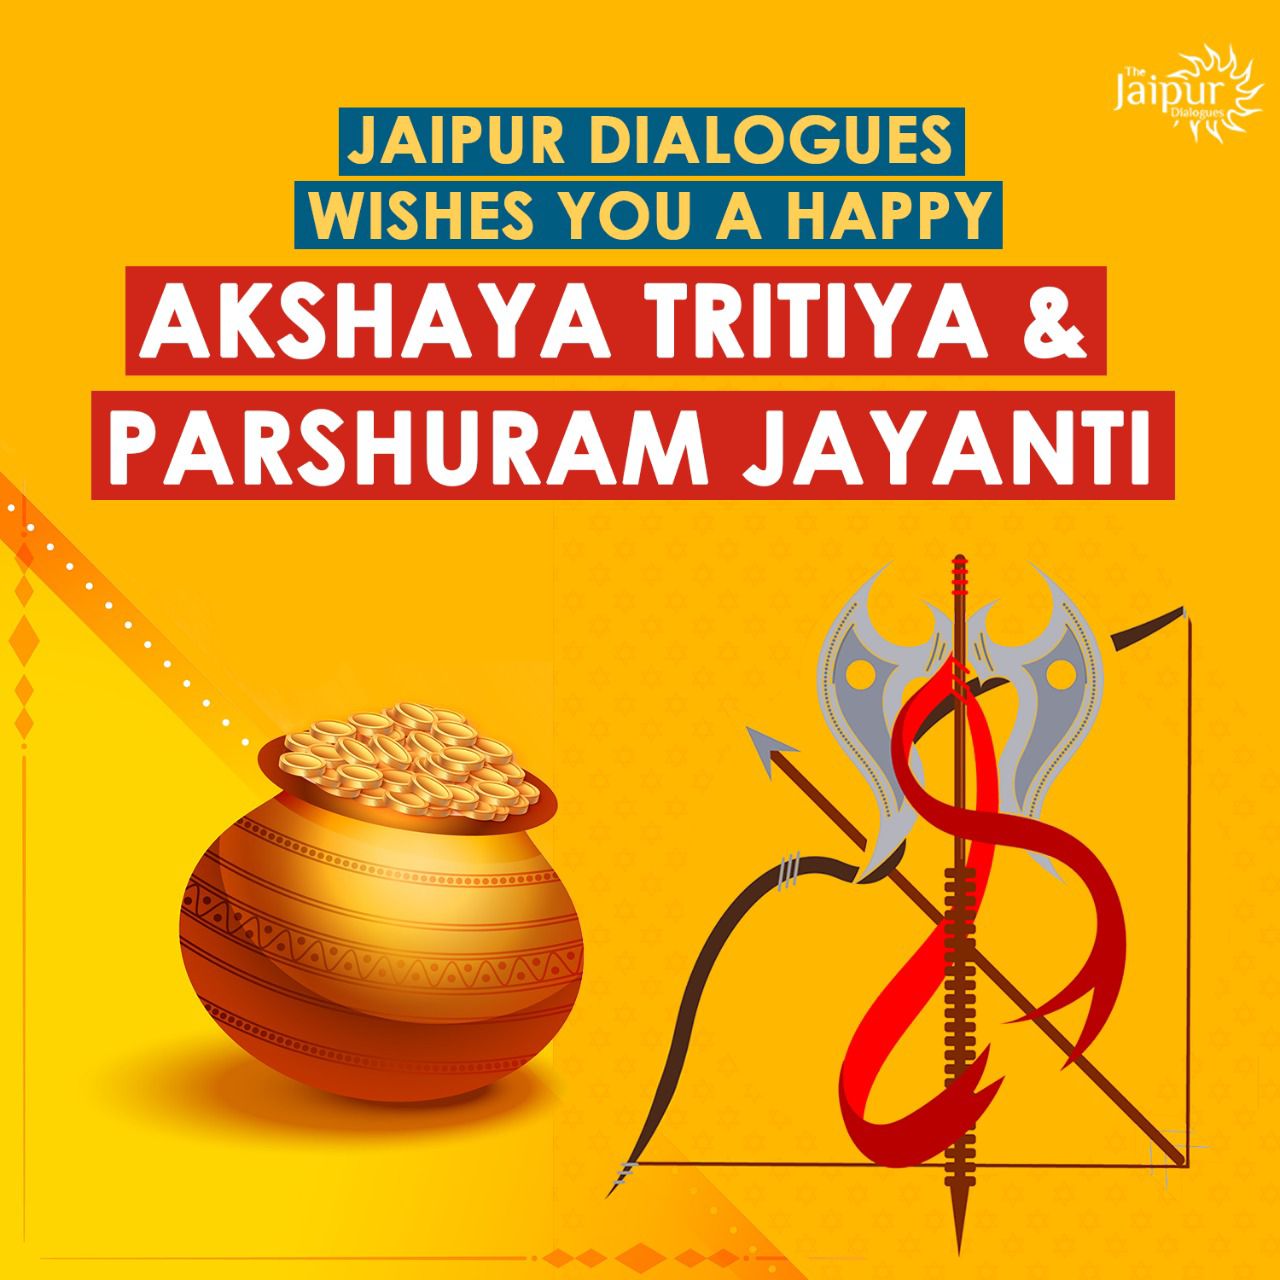 Happy Akshay Tritiya and Parshuram Jayanti